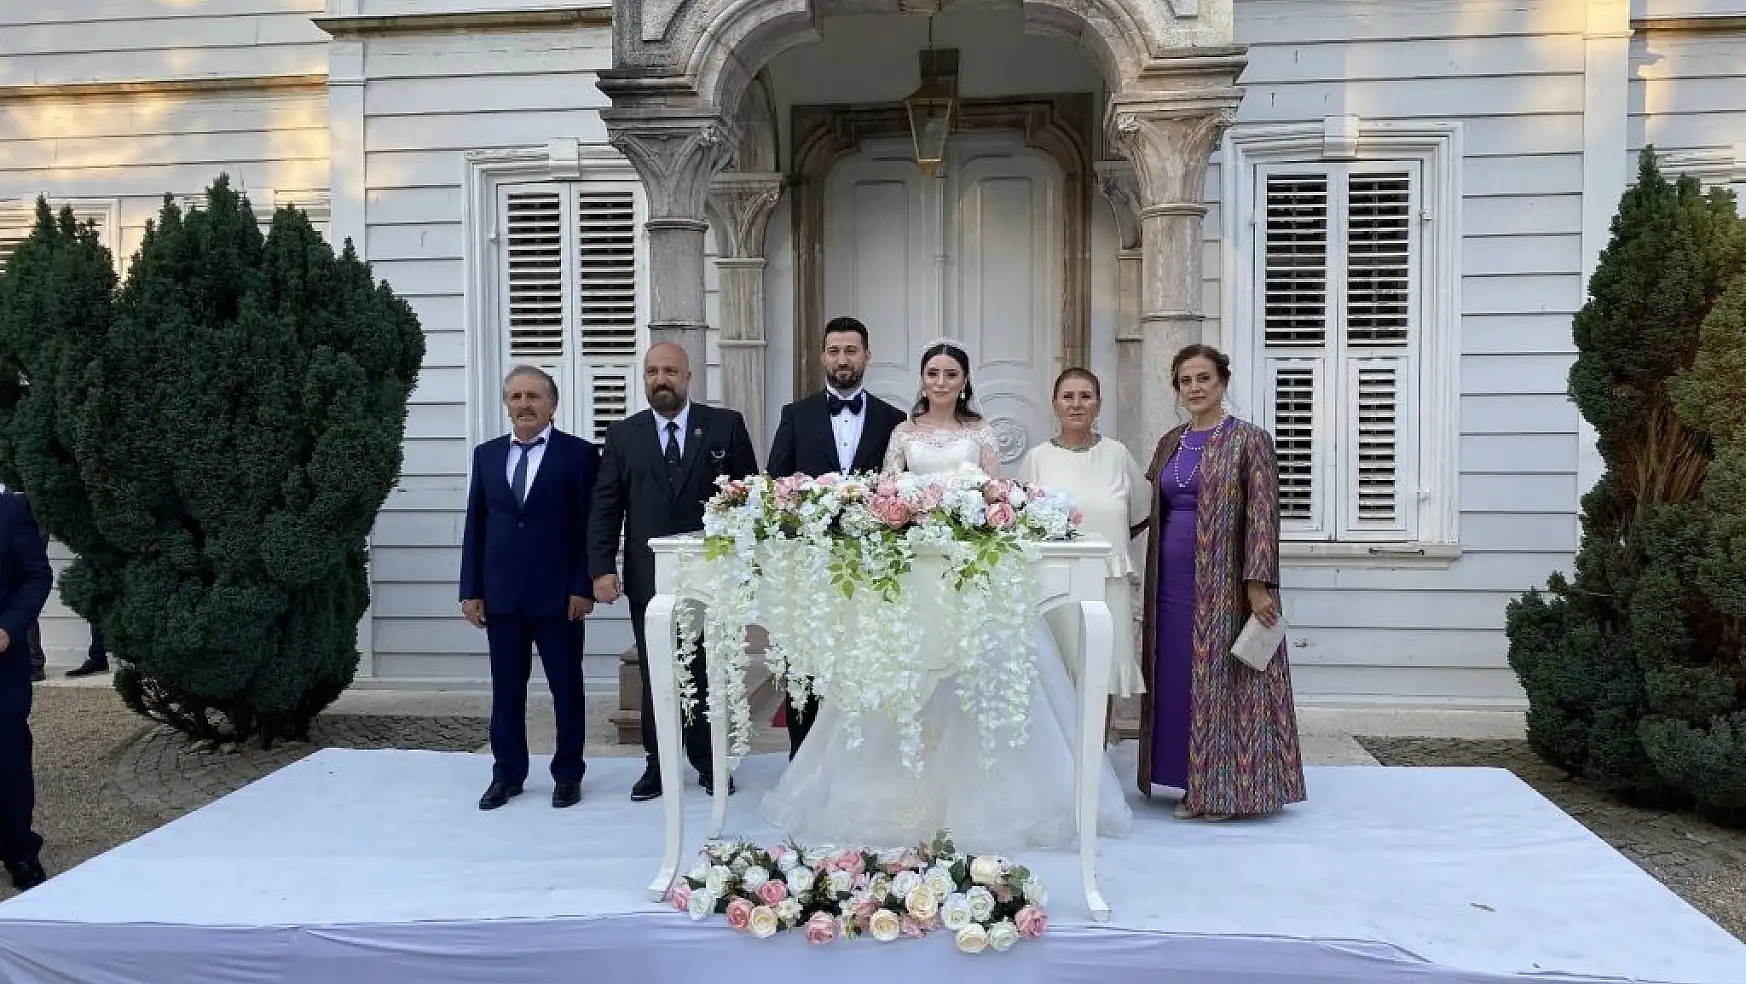 Bir Osmanlı şehzadesi daha dünya evine girdi! Yavuz Selim Osmanoğlu Maslak Kasrı'nda evlendi